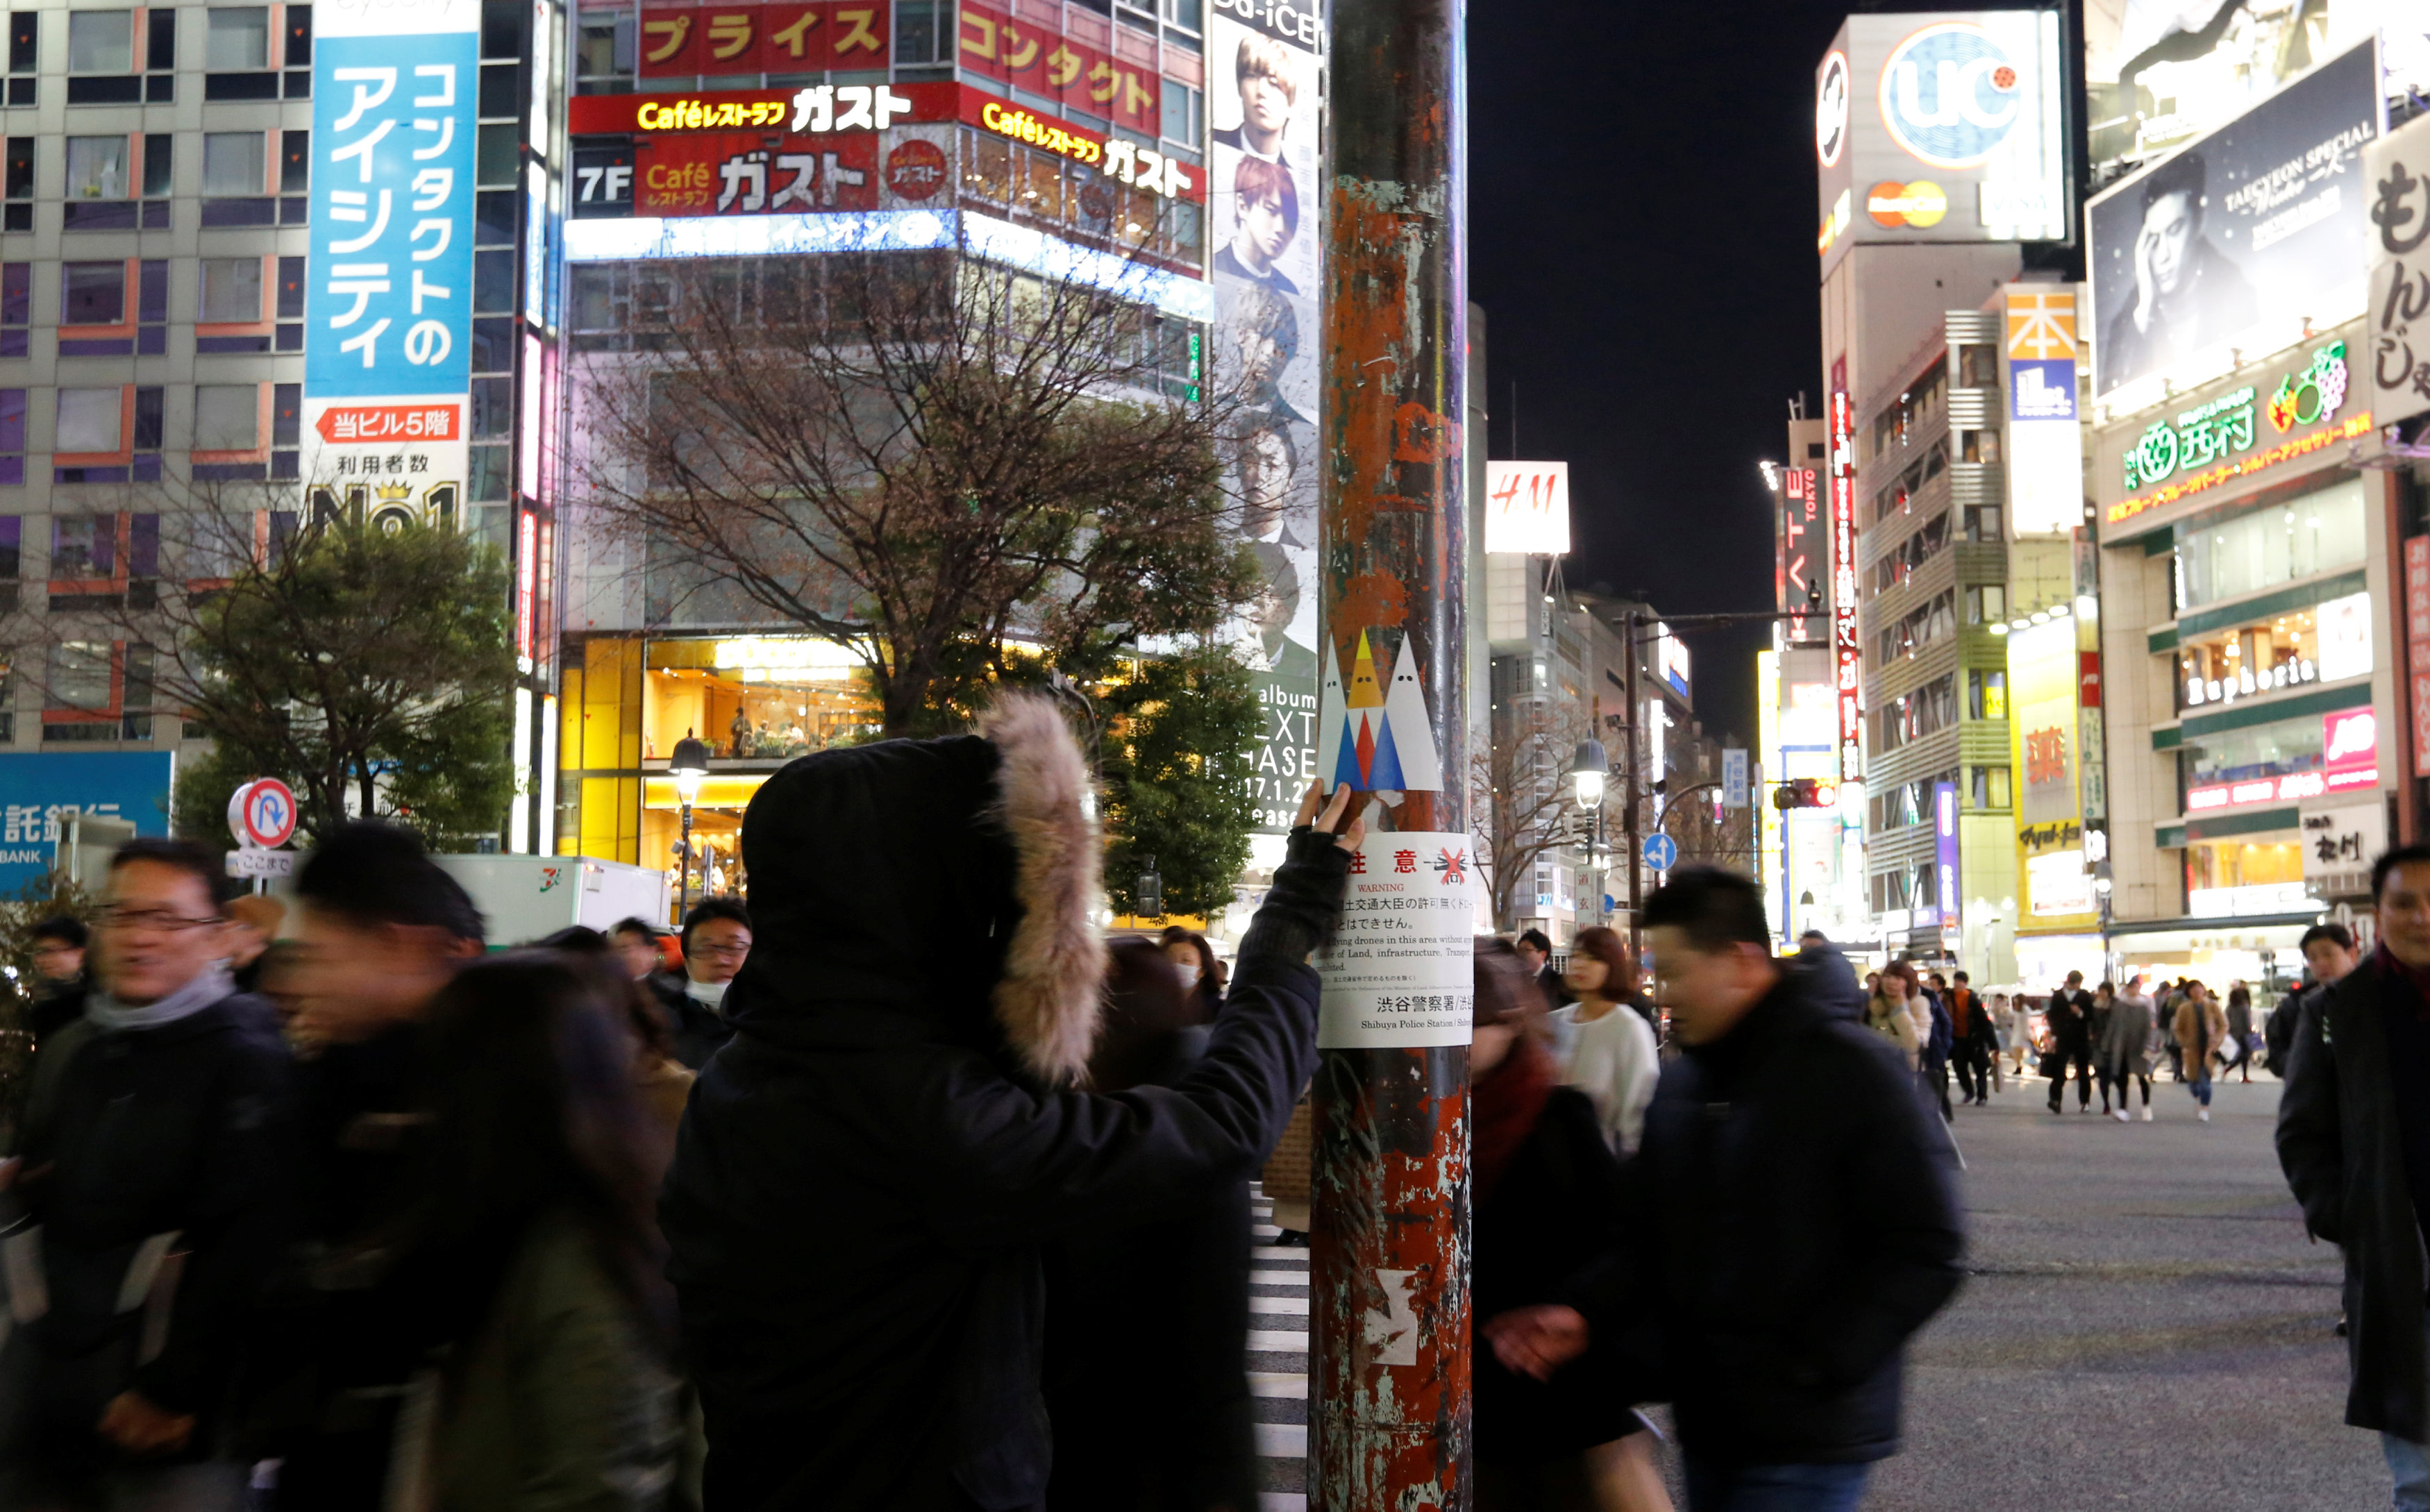 المارة يقفون لمشاهدة جرافيتى يتنقد دونالد ترامب فى شوارع طوكيو